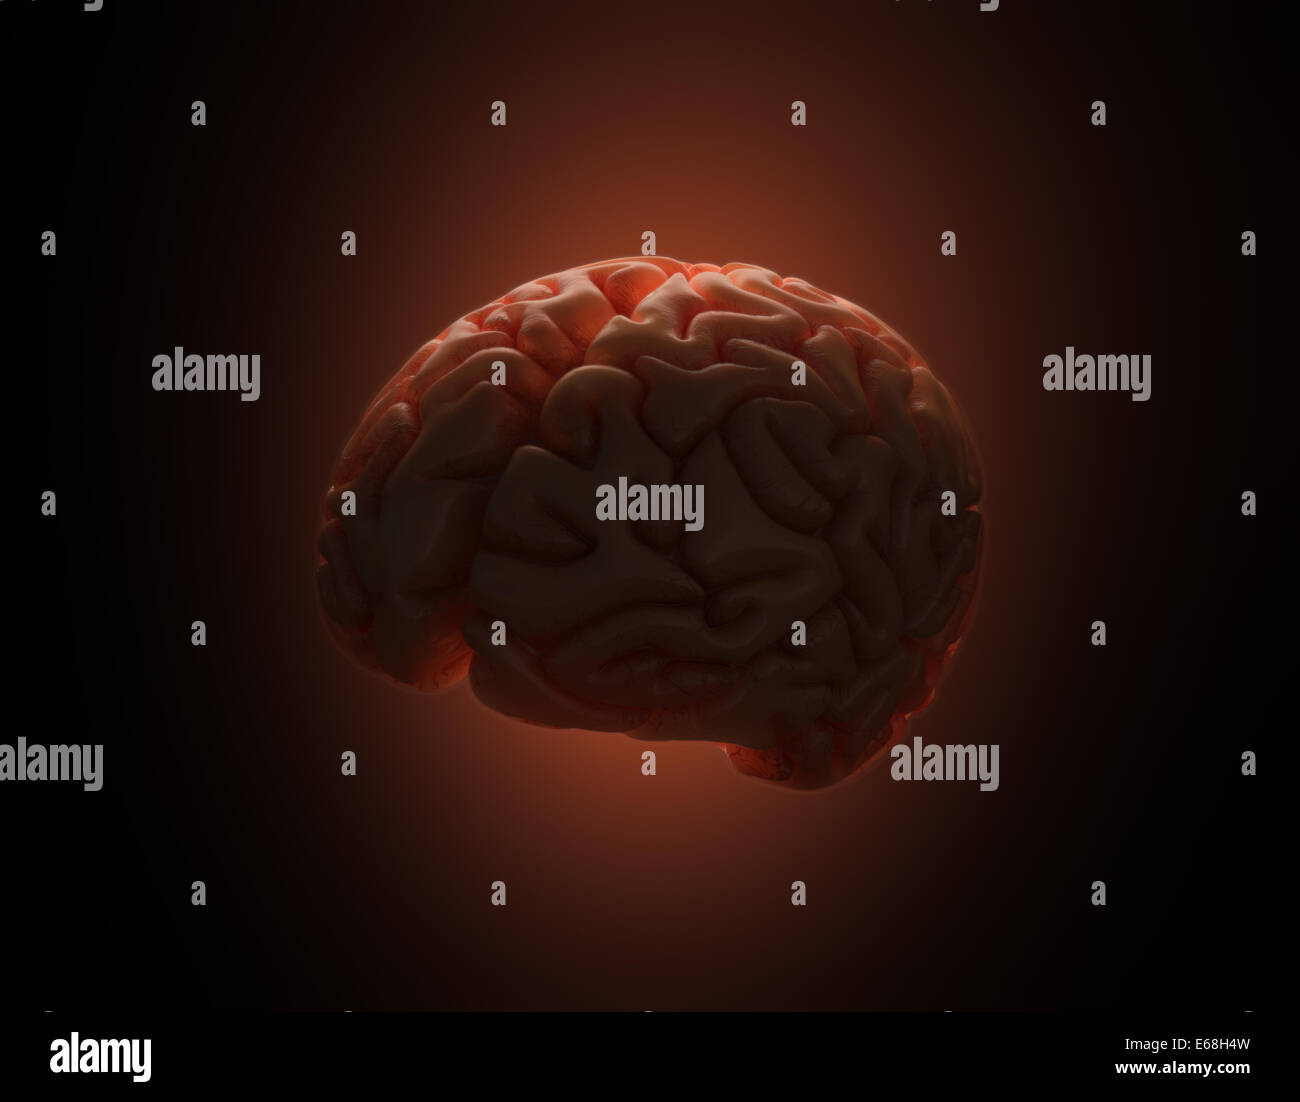 Das Gehirn wird von hinten beleuchtet in dunkler Umgebung. Clipping-Pfad enthalten. Stockfoto